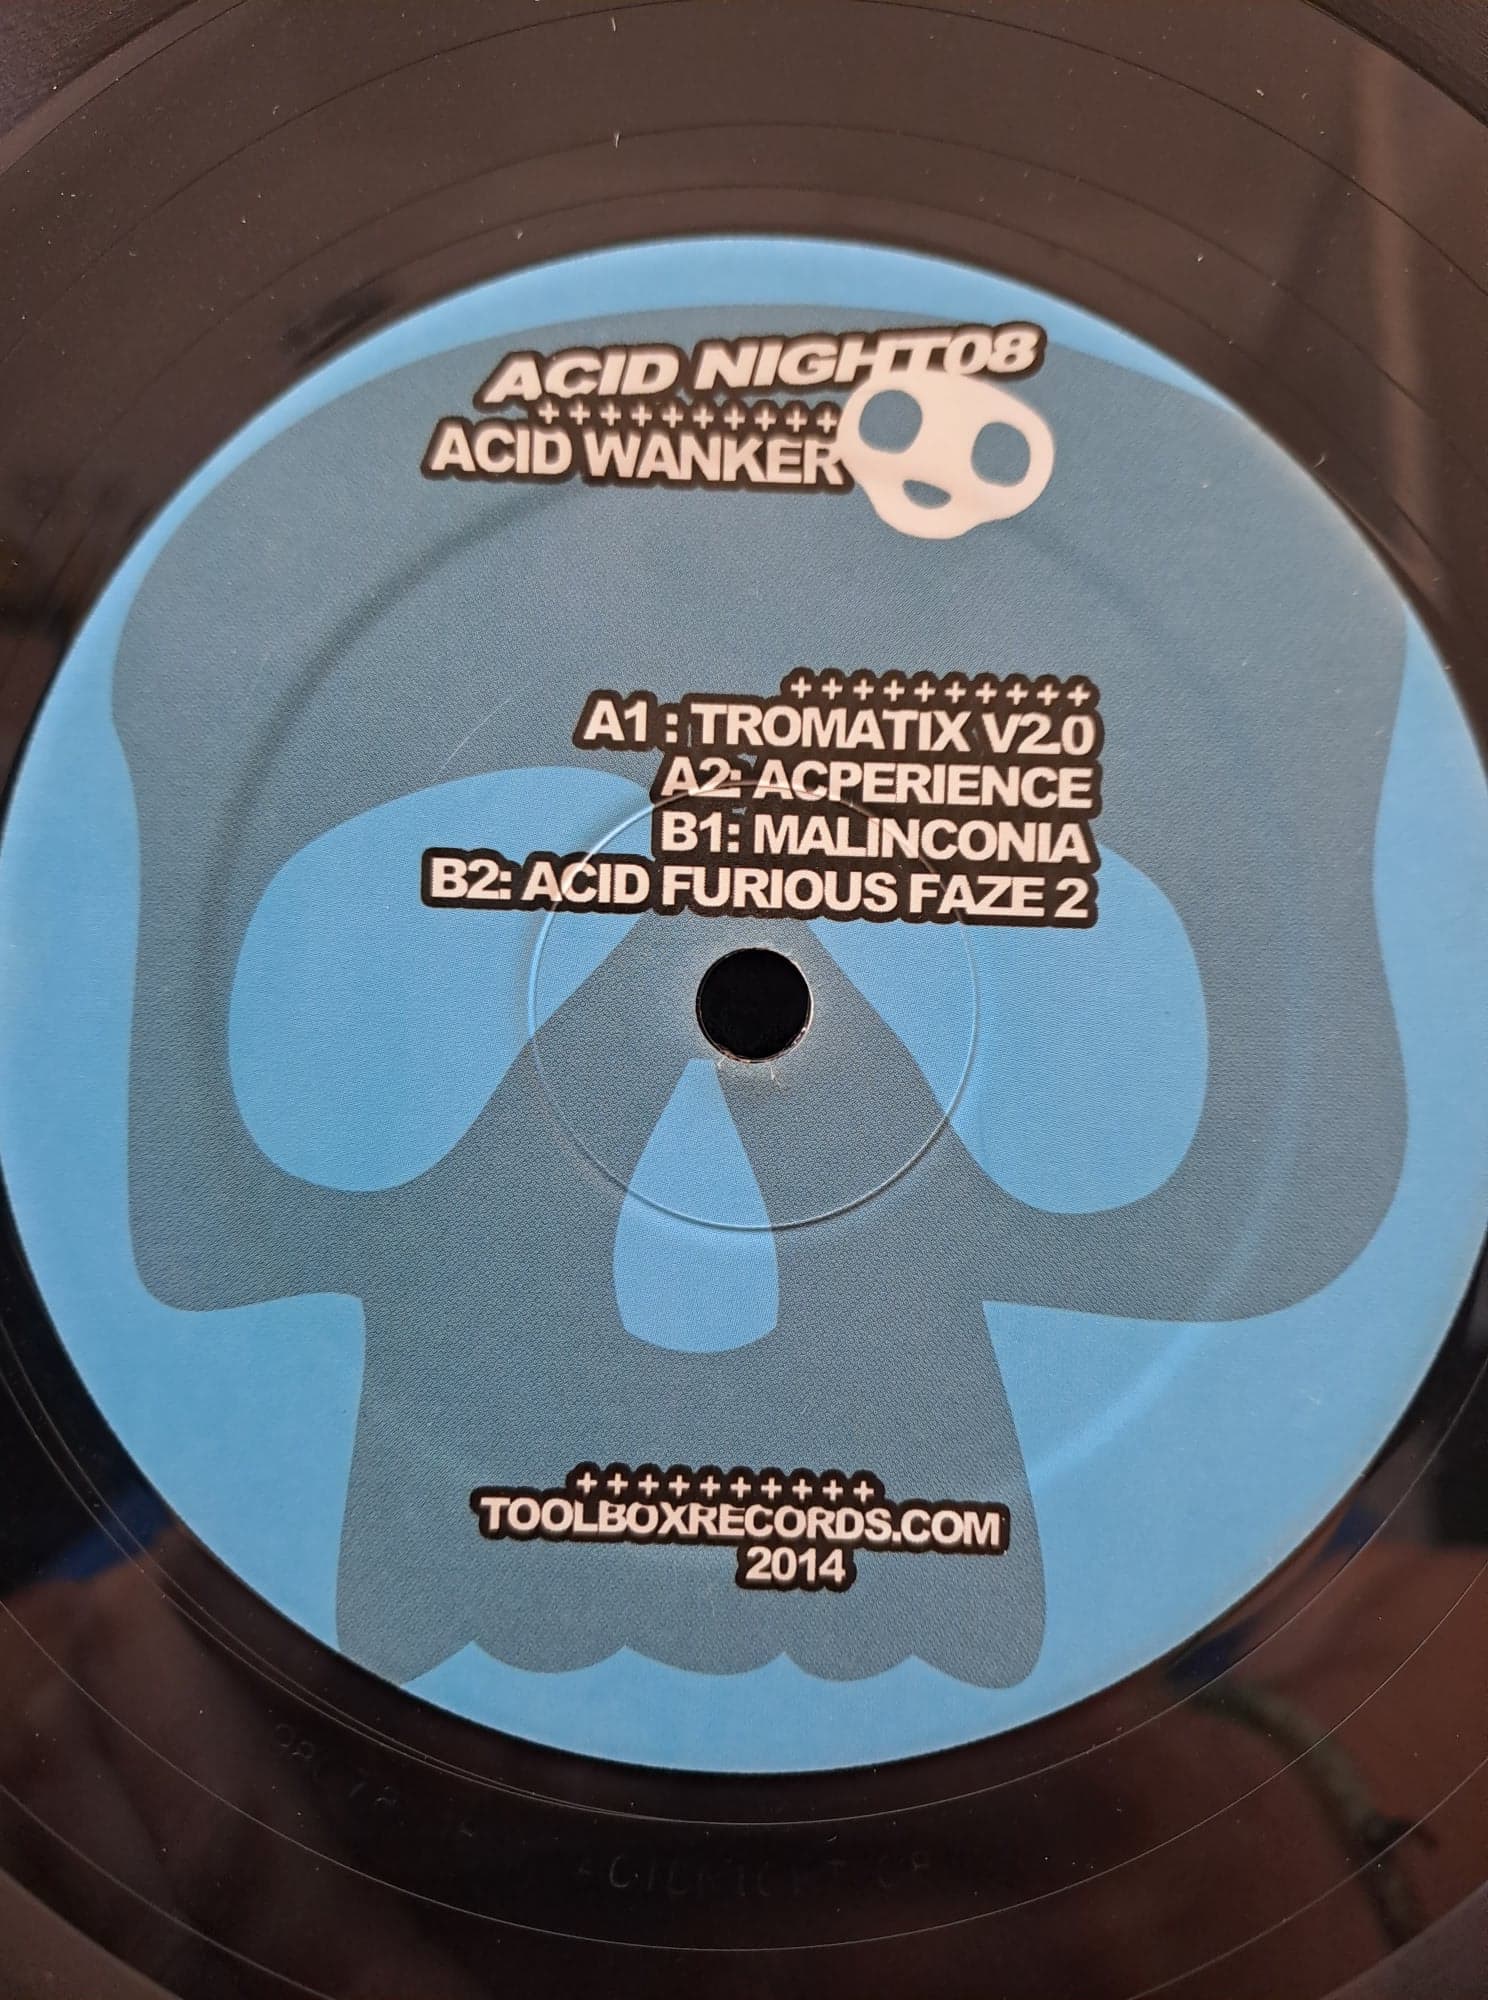 Acid Night 08 - vinyle acidcore